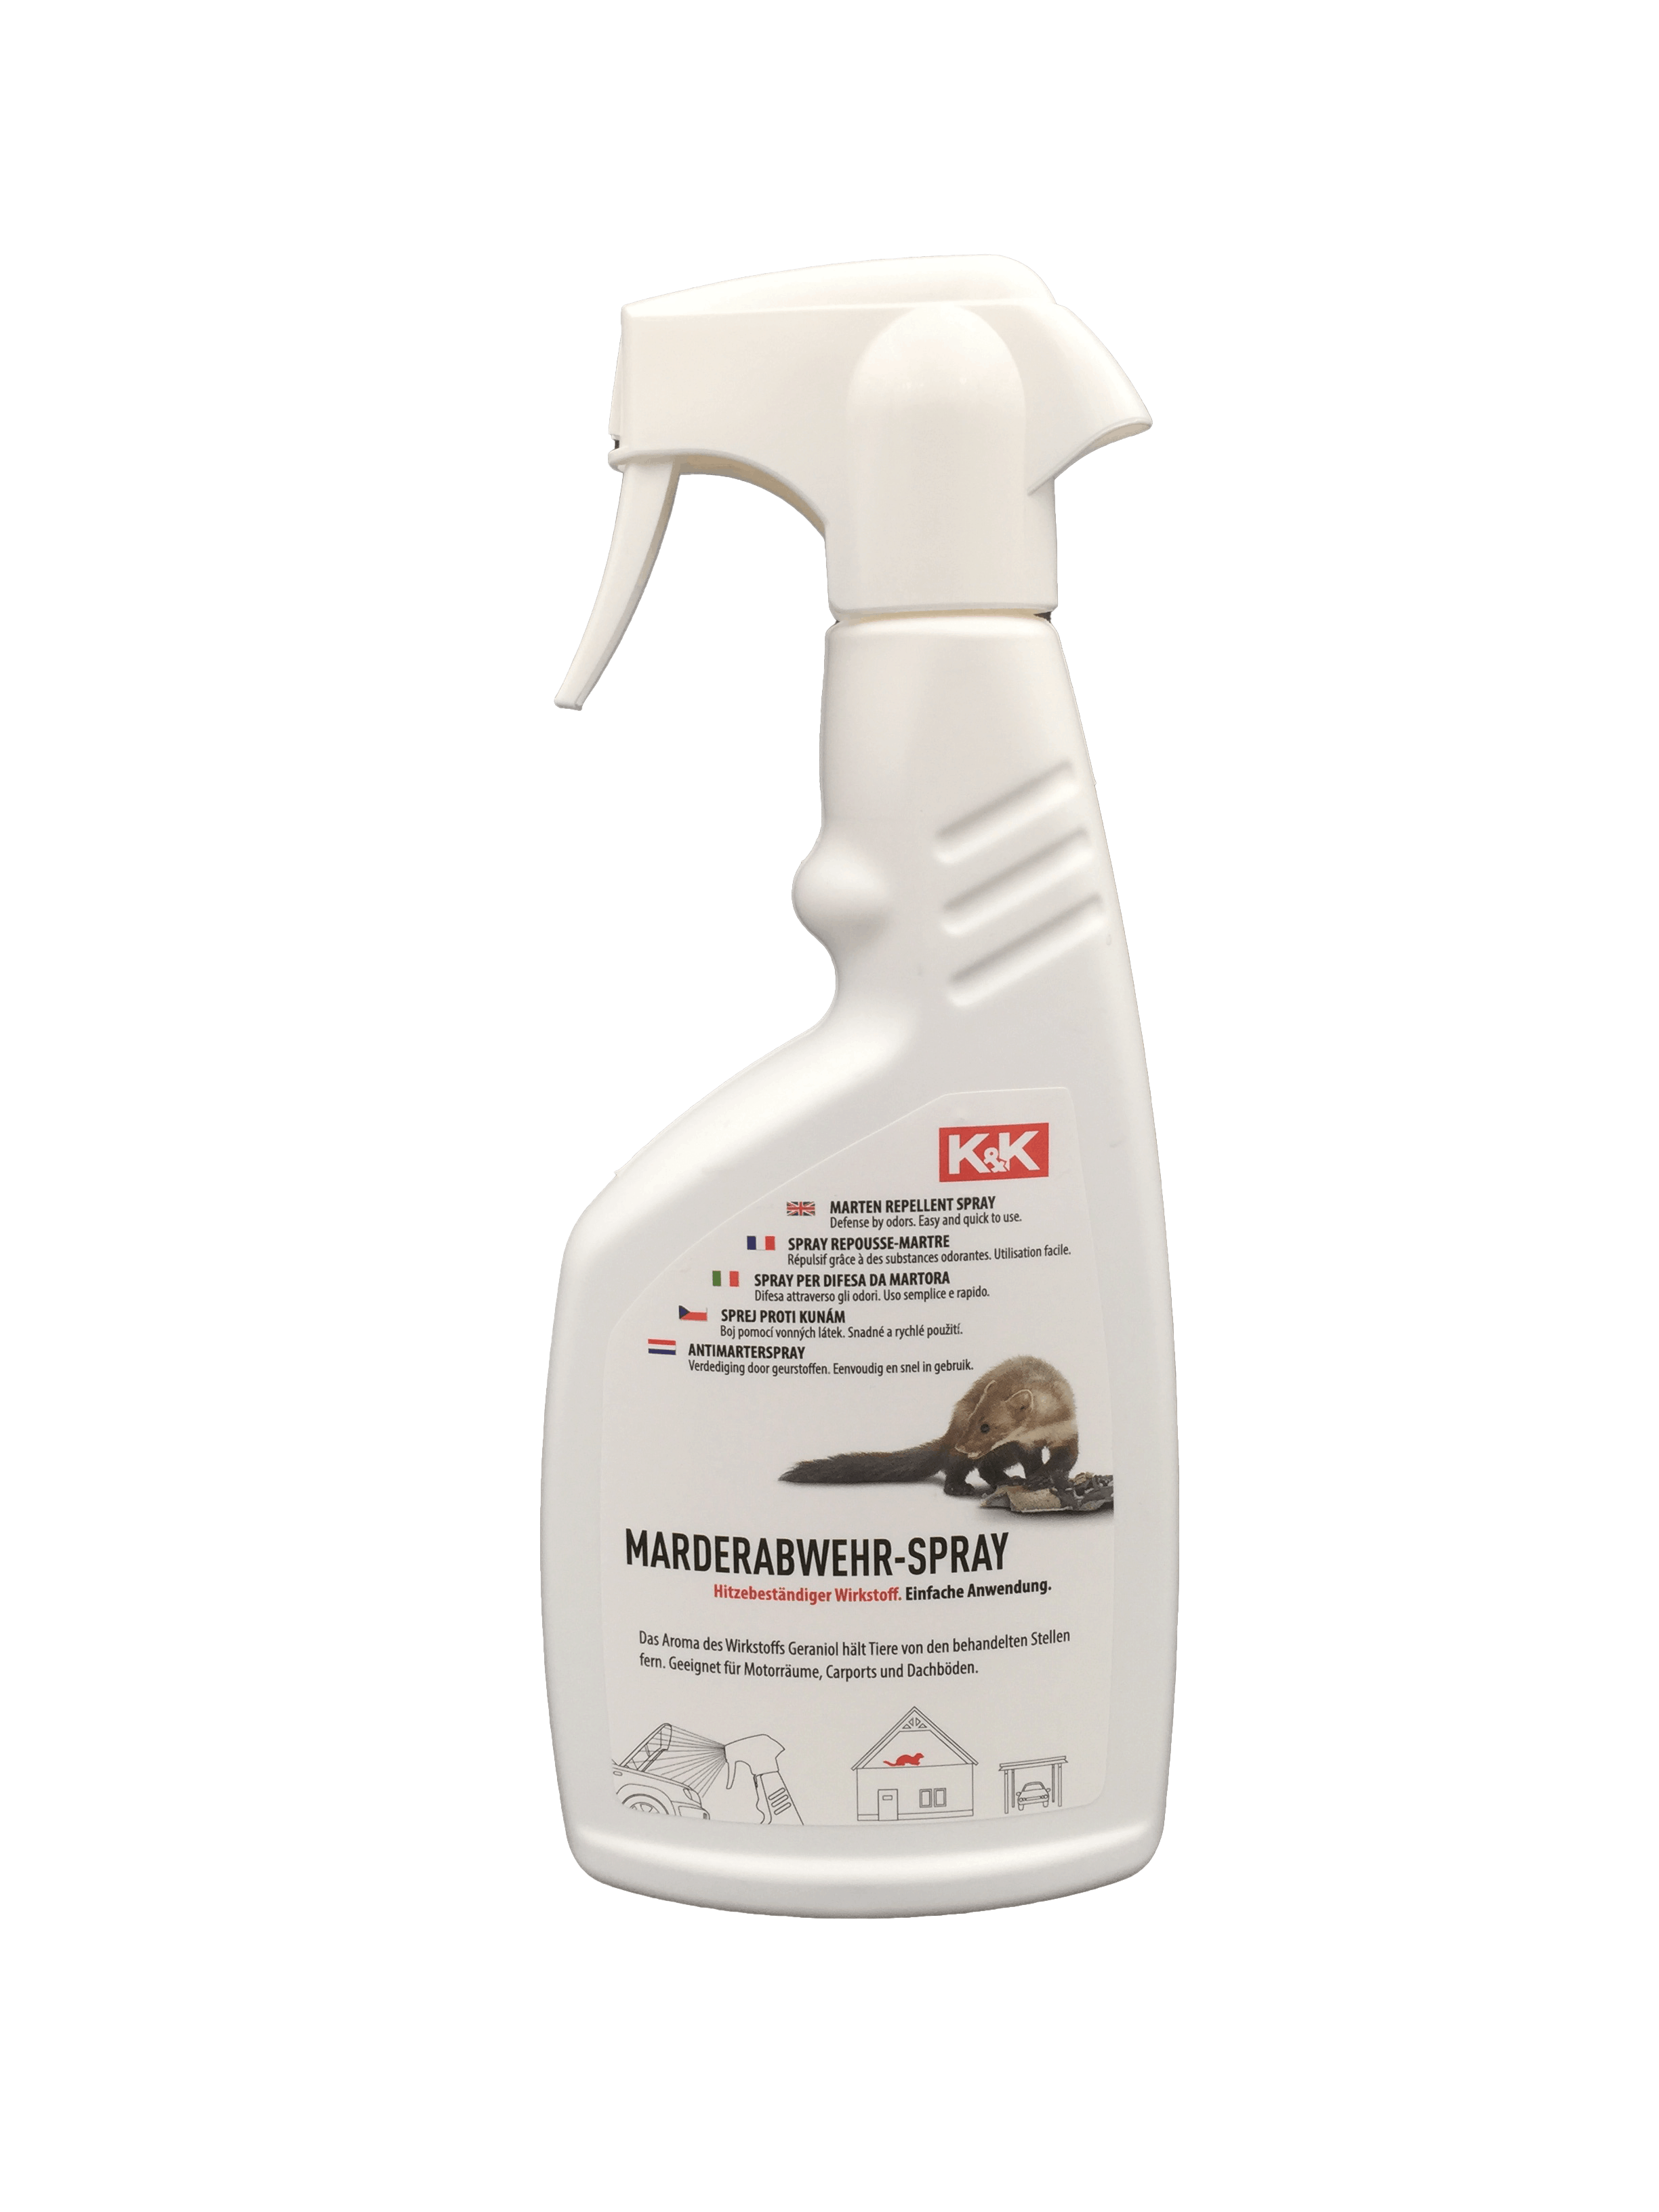 Anti Marder Spray Hagopur 200 ml.